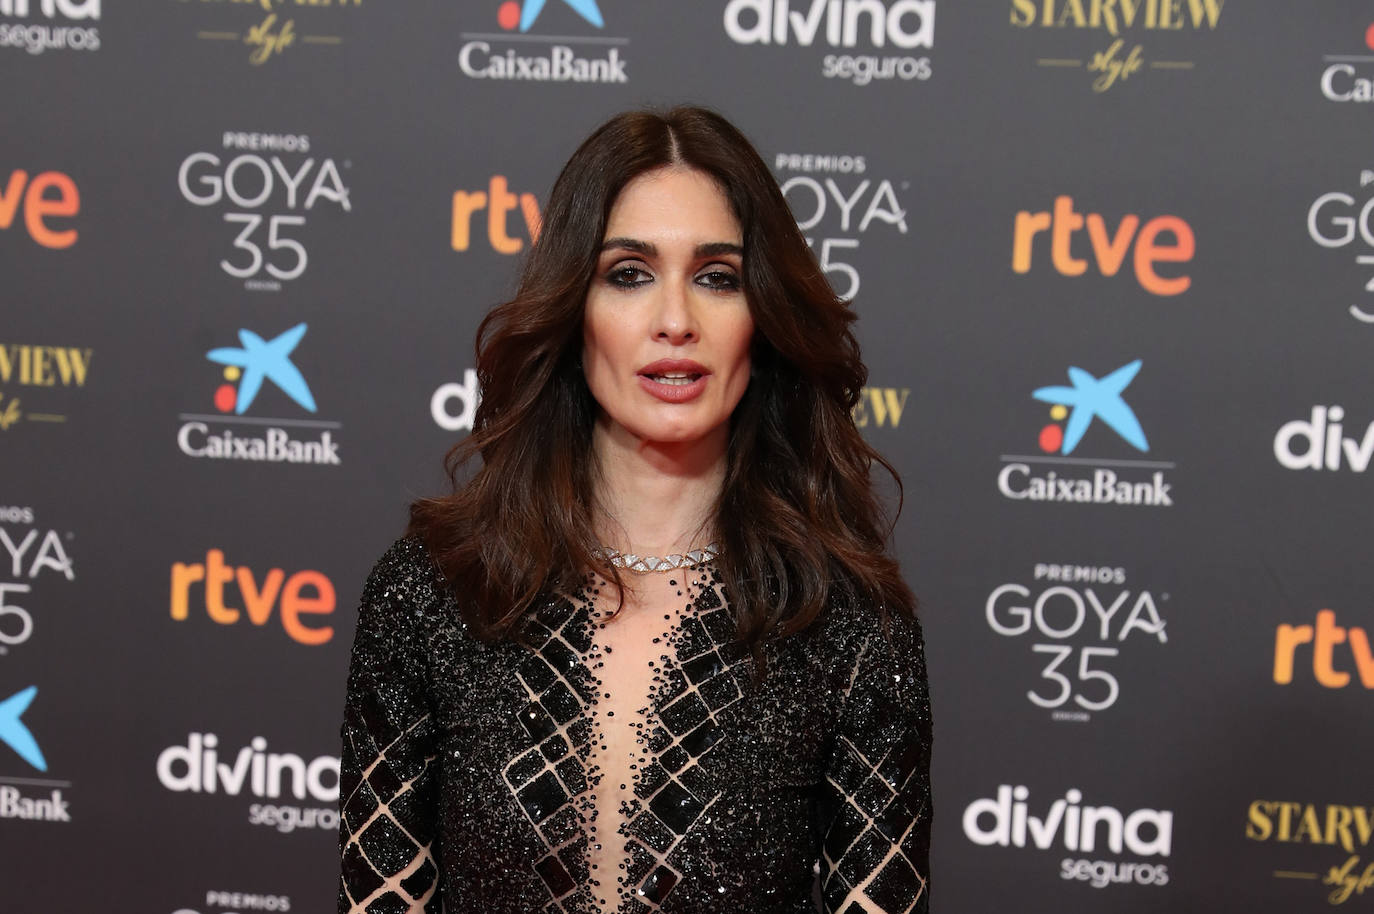 Premios Goya 2021: los peinados y maquillajes más bonitos de la alfombra roja